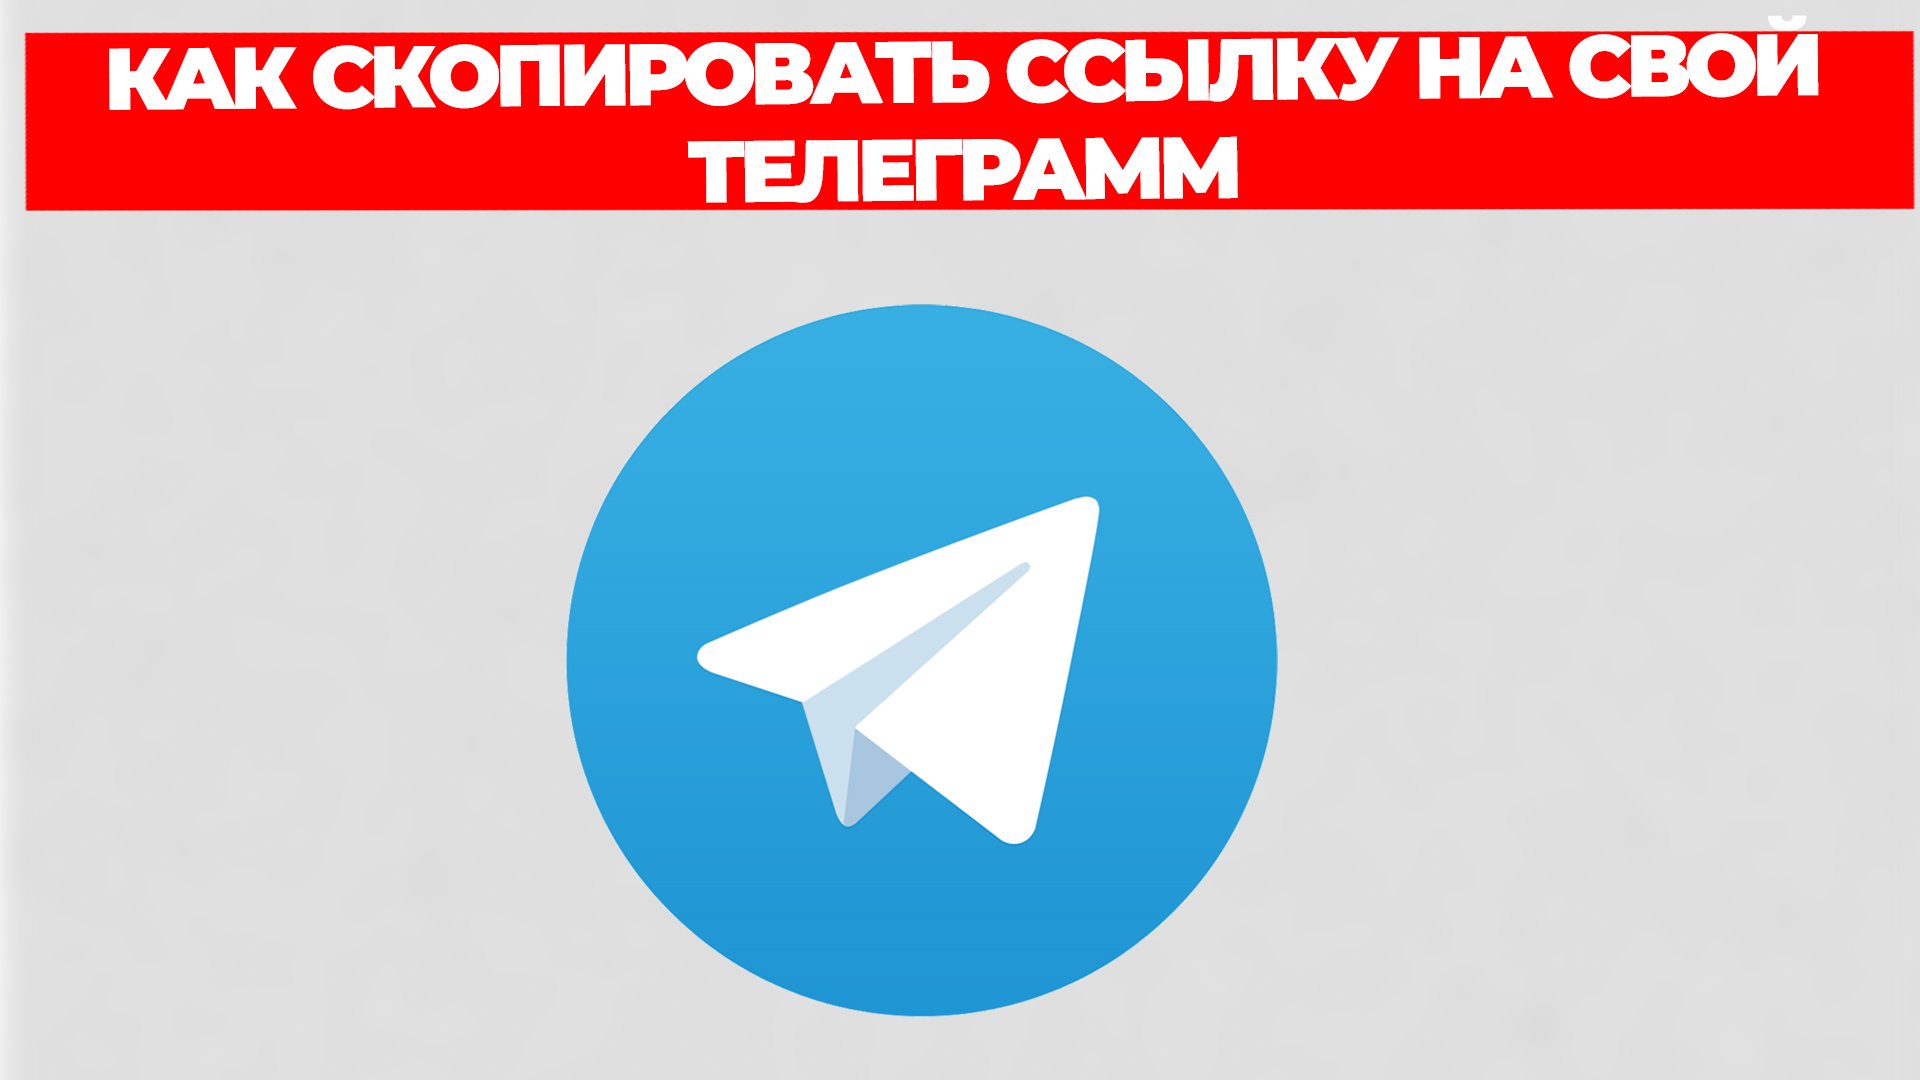 Обновить телеграмм на андроид бесплатно на русском языке без регистрации как фото 21